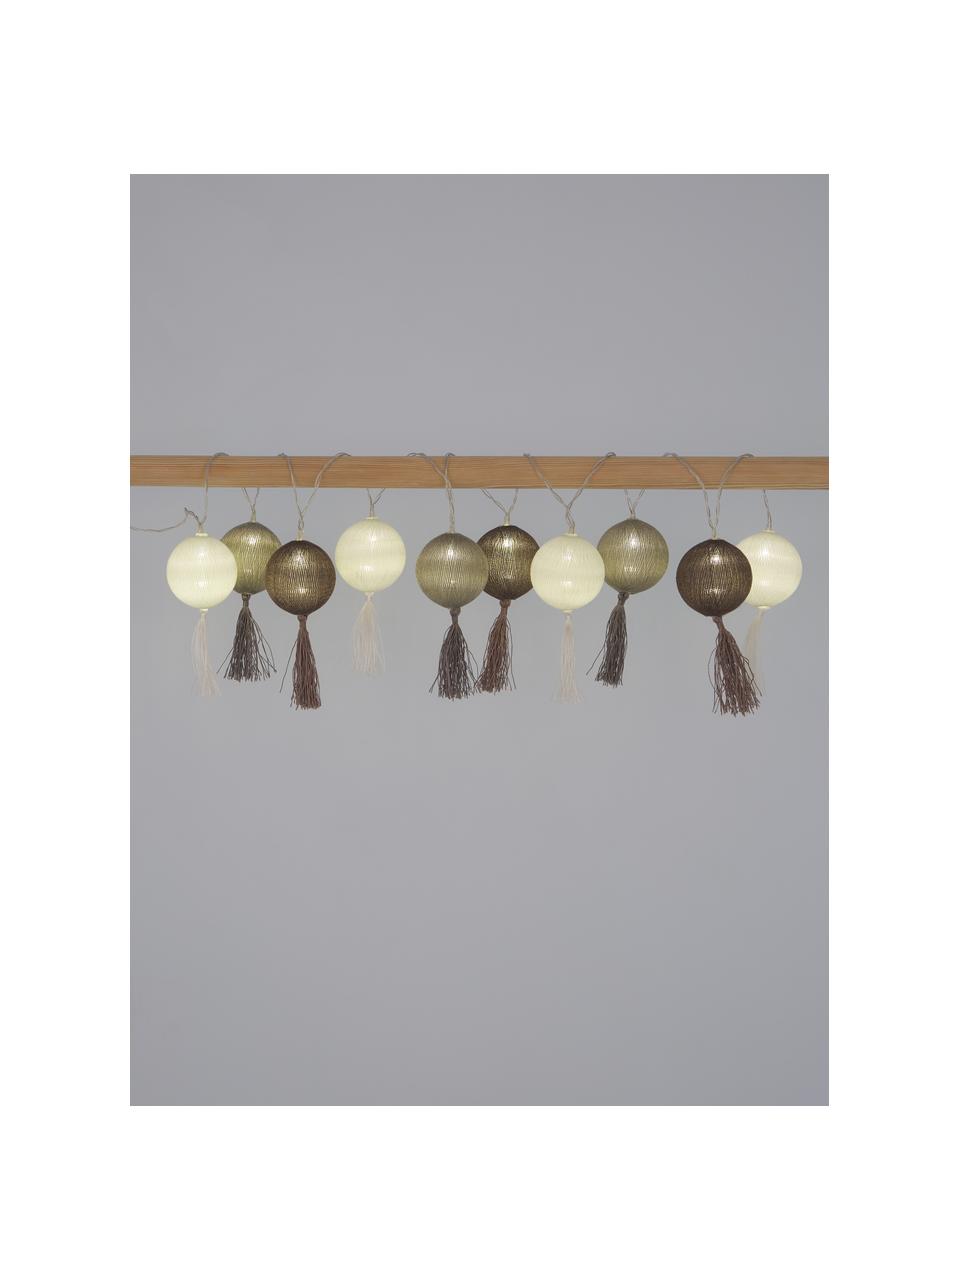 Girlanda świetlna LED Jolly Tassel, 185 cm i 10 lampionów, Biały, brązowy, beżowy, D 185 cm